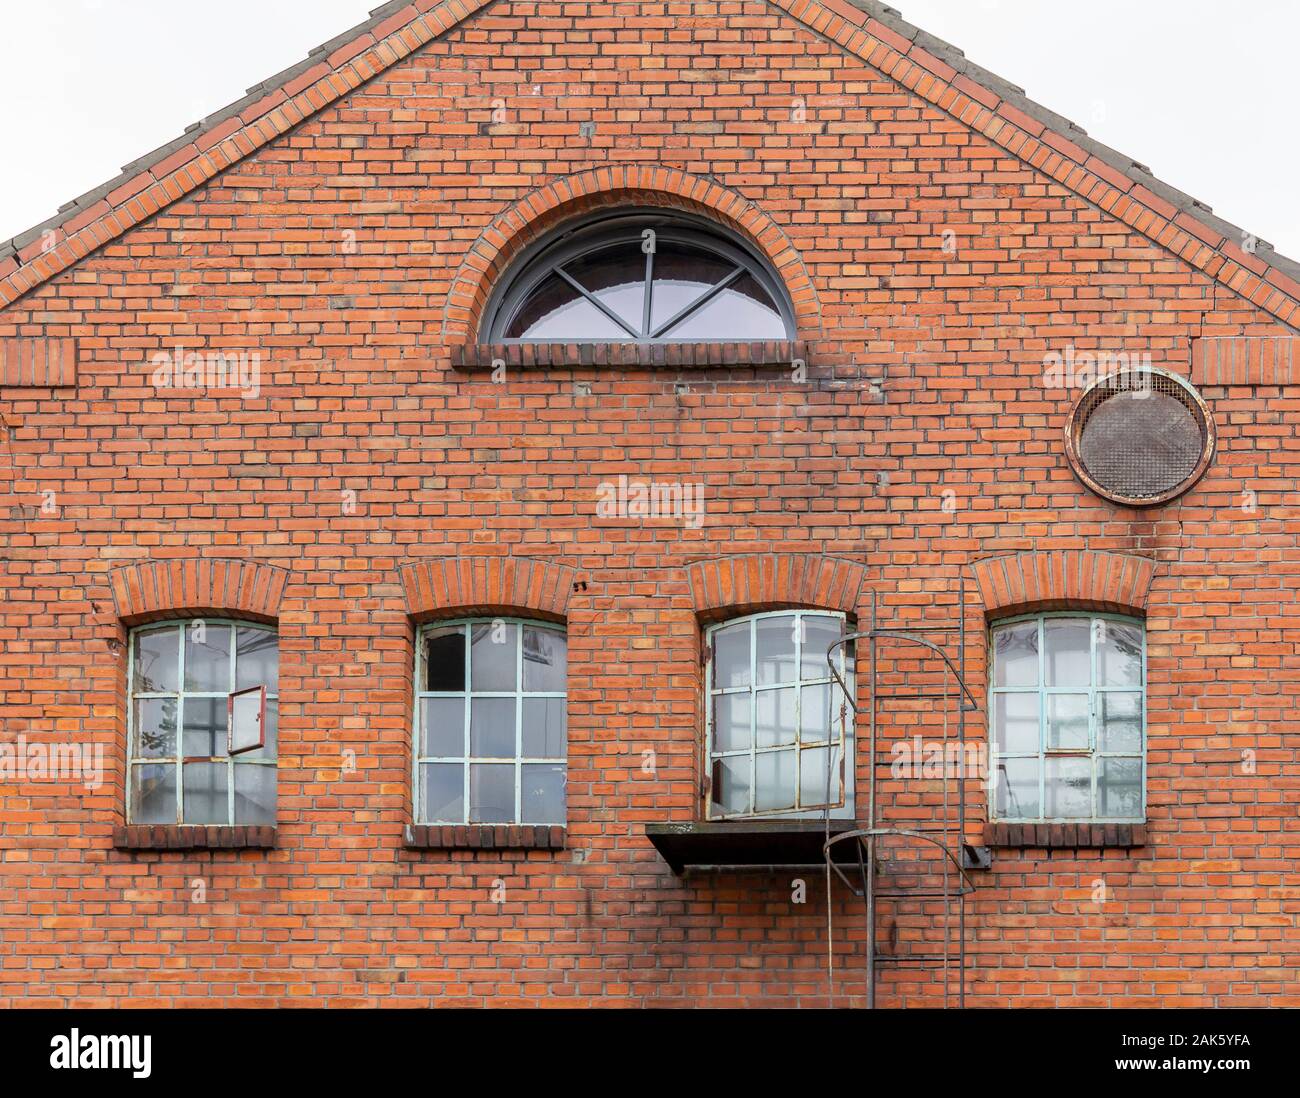 Historischen architektonischen Details in Oldenburg, eine unabhängige Stadt in Niedersachsen gesehen, Deutschland Stockfoto